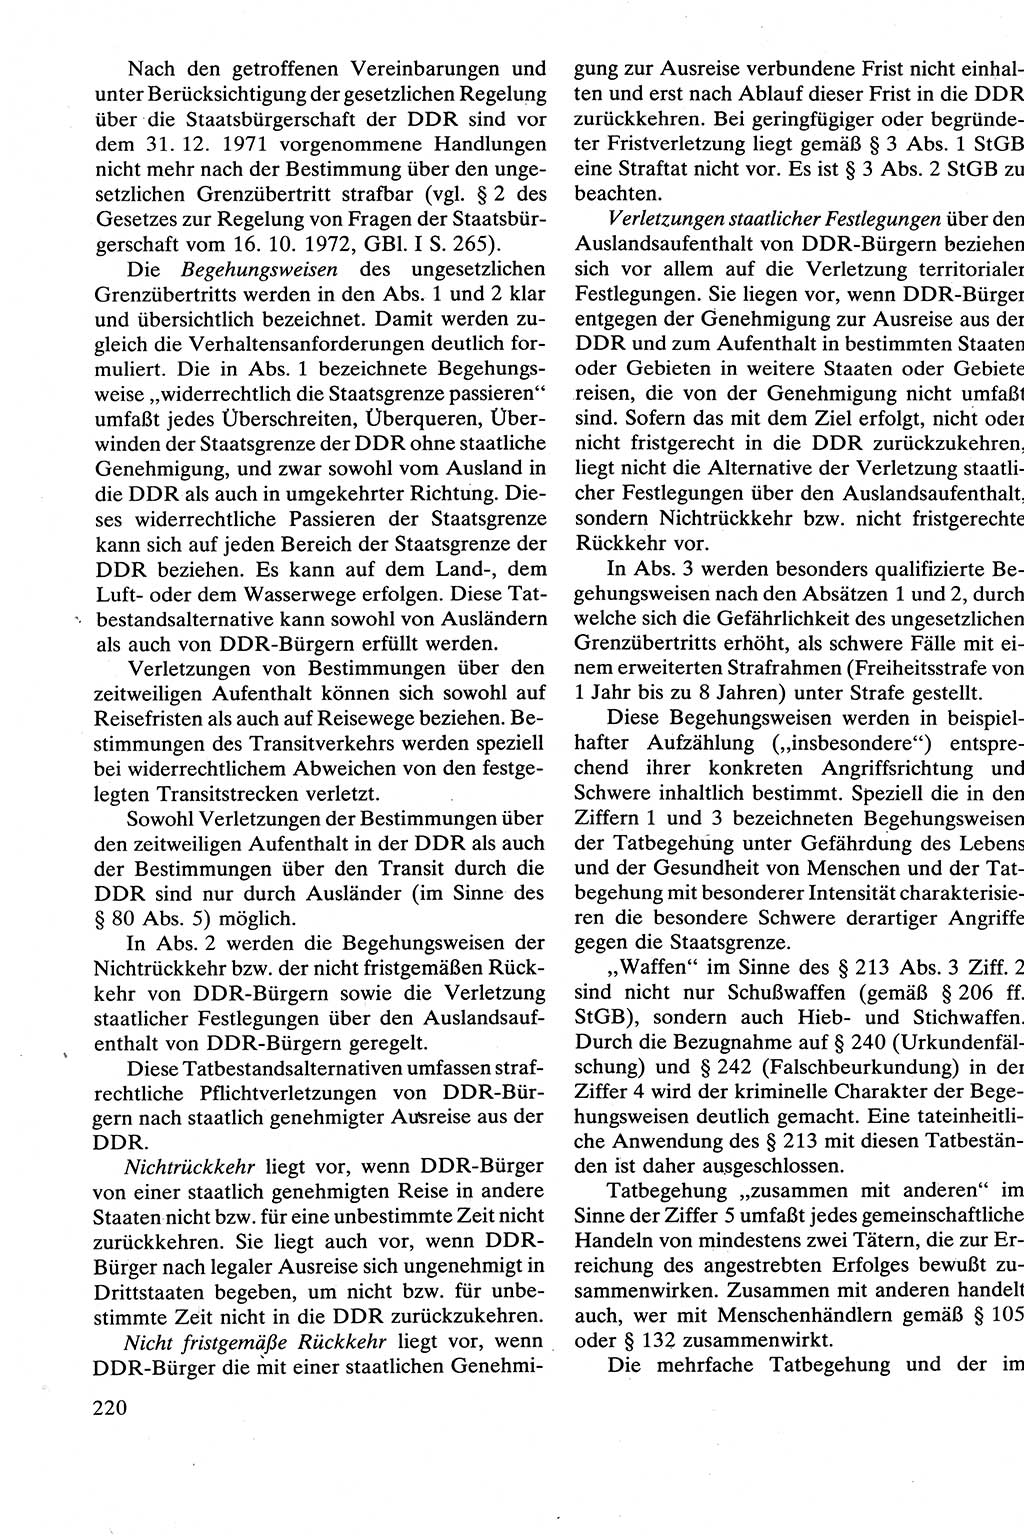 Strafrecht [Deutsche Demokratische Republik (DDR)], Besonderer Teil, Lehrbuch 1981, Seite 220 (Strafr. DDR BT Lb. 1981, S. 220)